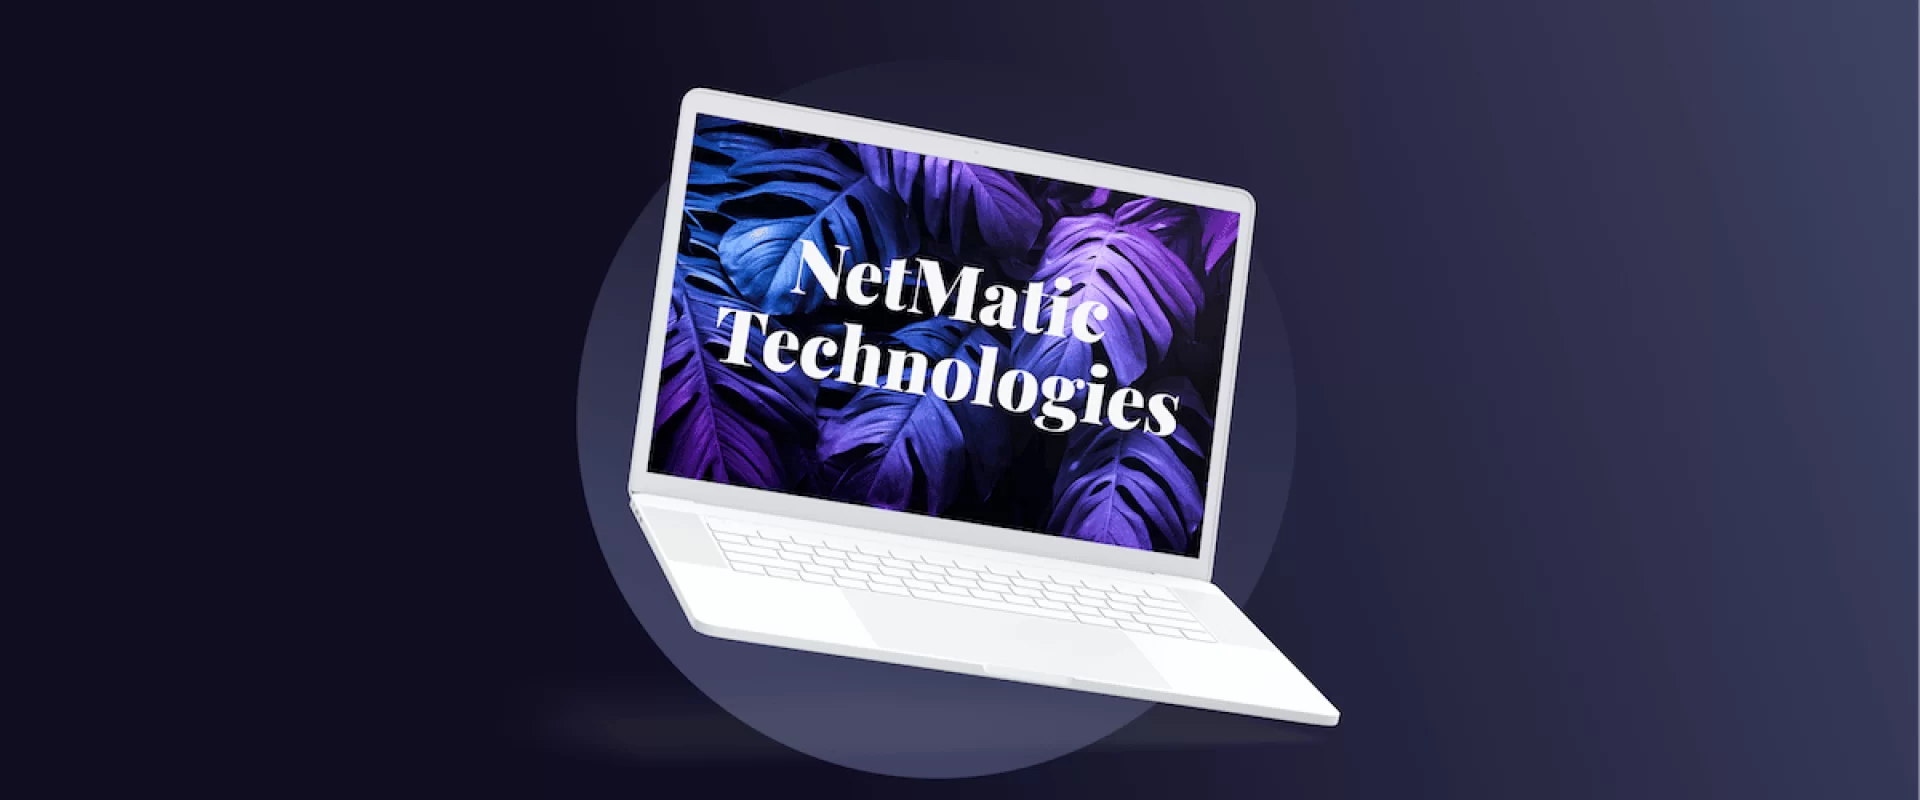 NetMatic-Thumbnail